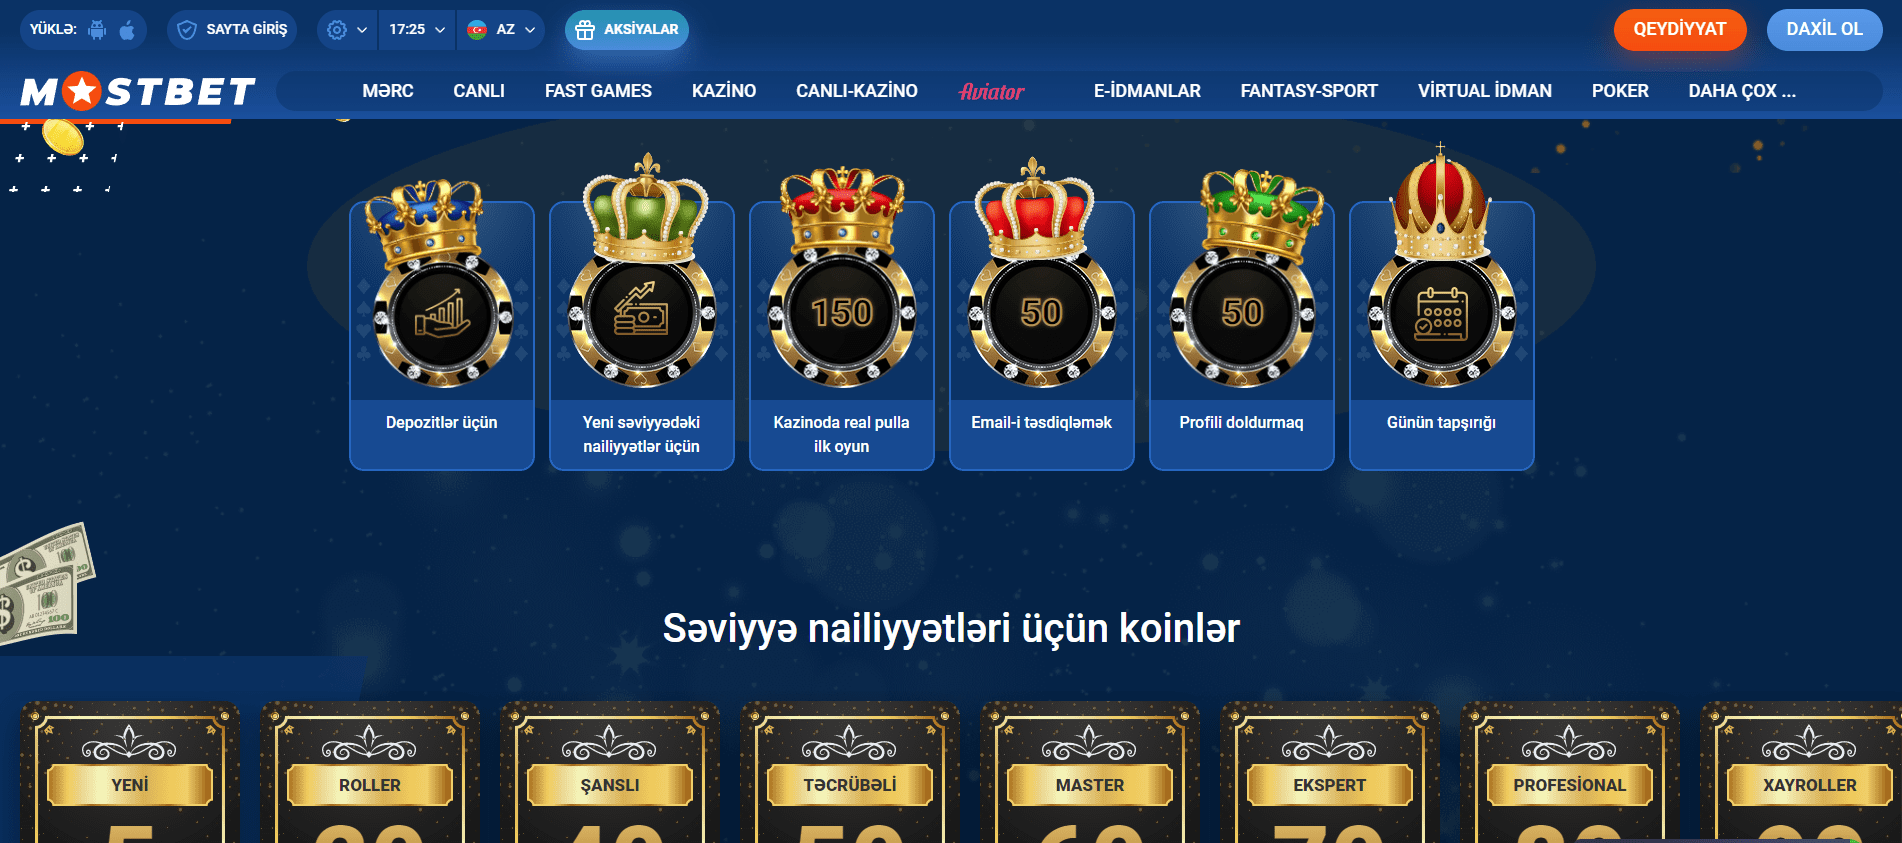 Mostbet Azərbaycan saytında kazino bonusu